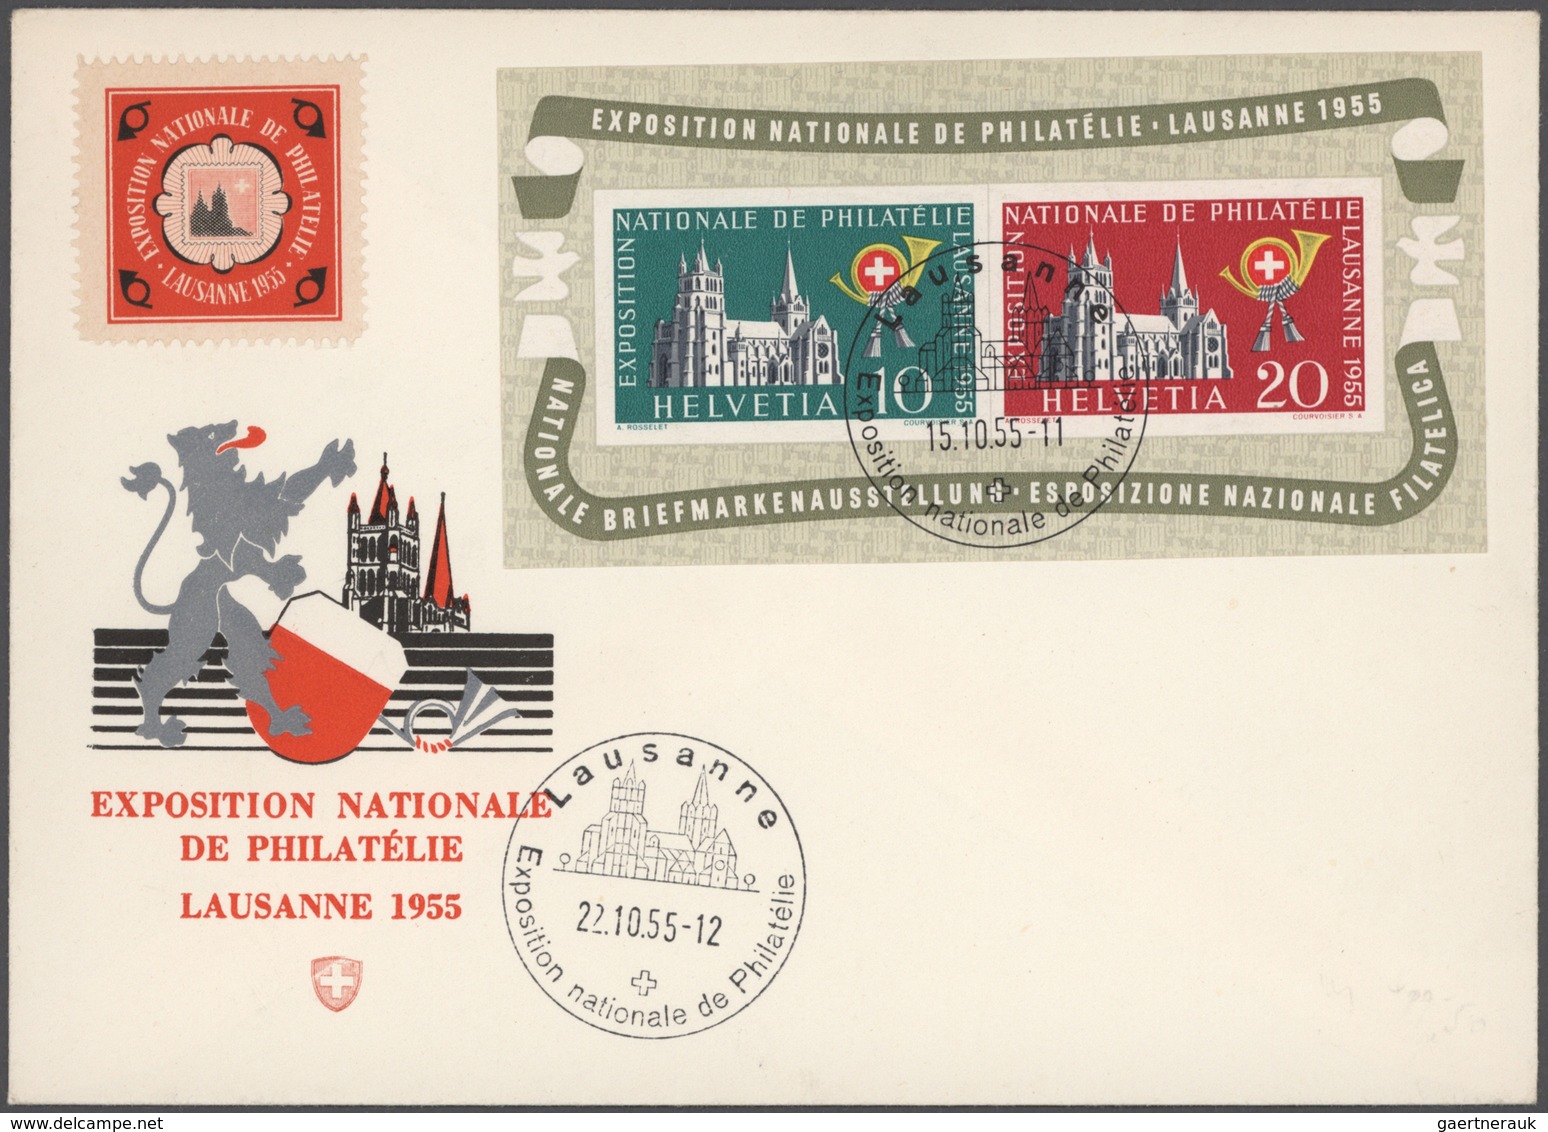 Schweiz: 1814/1955, vielseitige Partie von 58 Briefen und Karten, ab gutem Teil Vorphila, Markenzeit